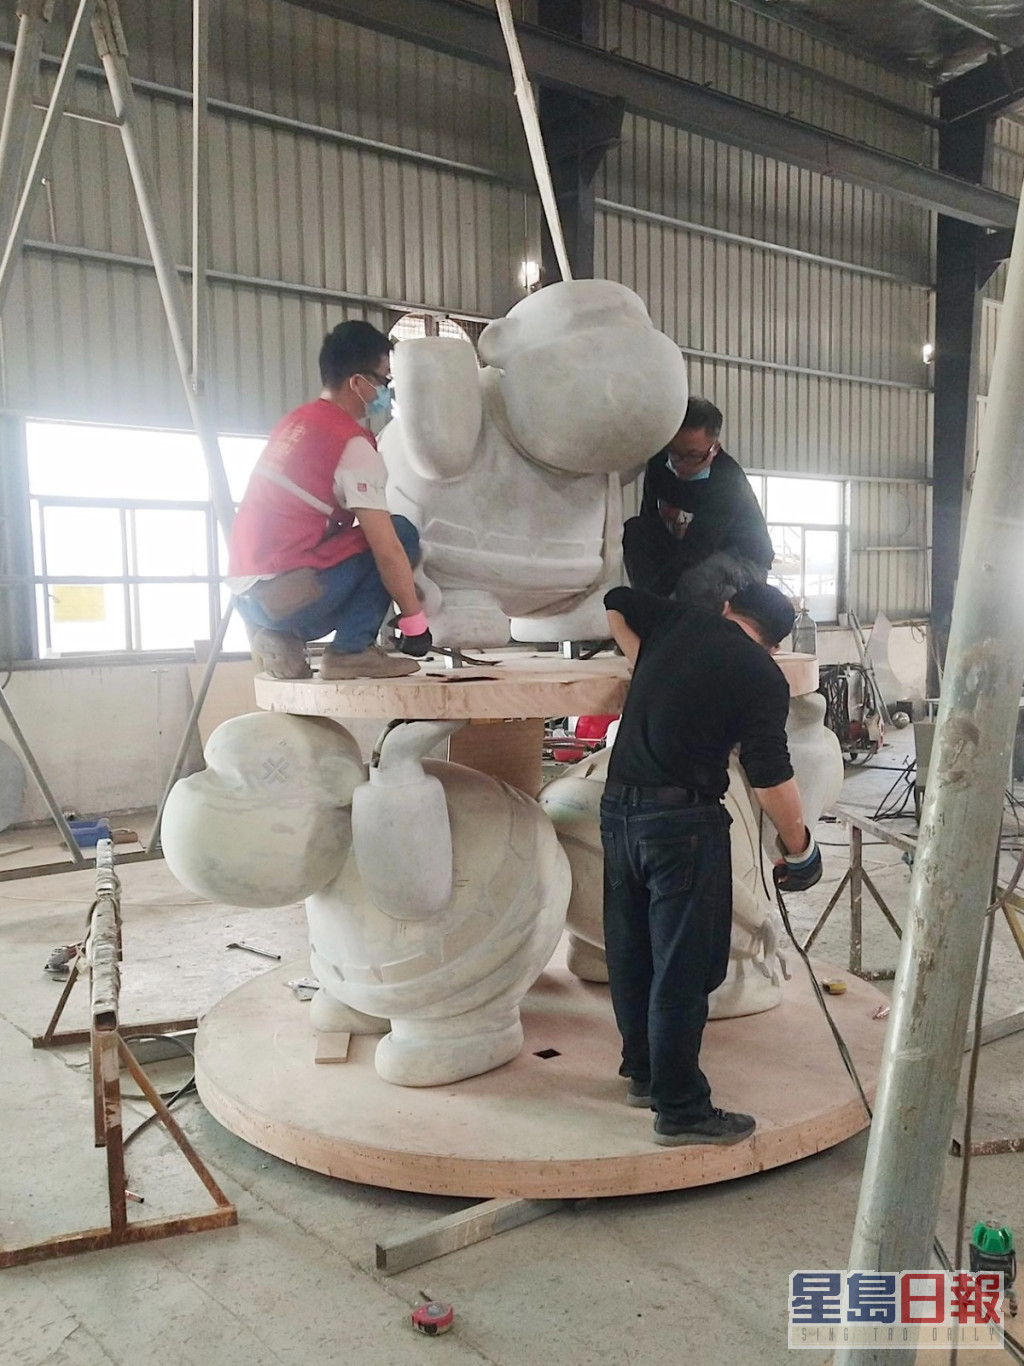 阿葛figure化身而成高4.5米的「醒狮叠罗汉」艺术装置。